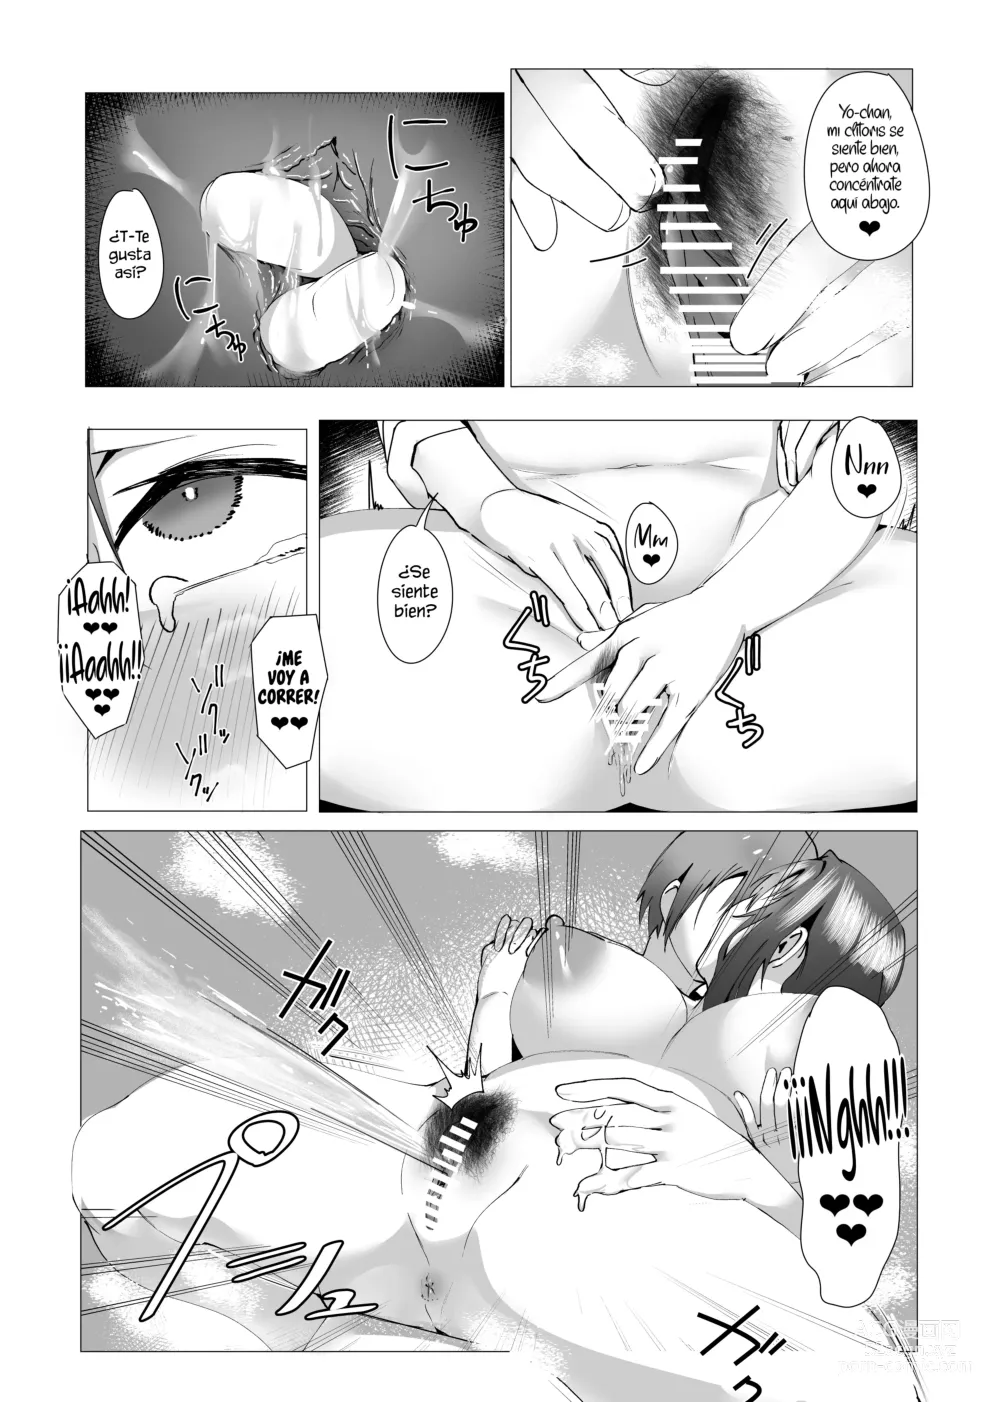 Page 36 of doujinshi ¿Estas bien con mami?